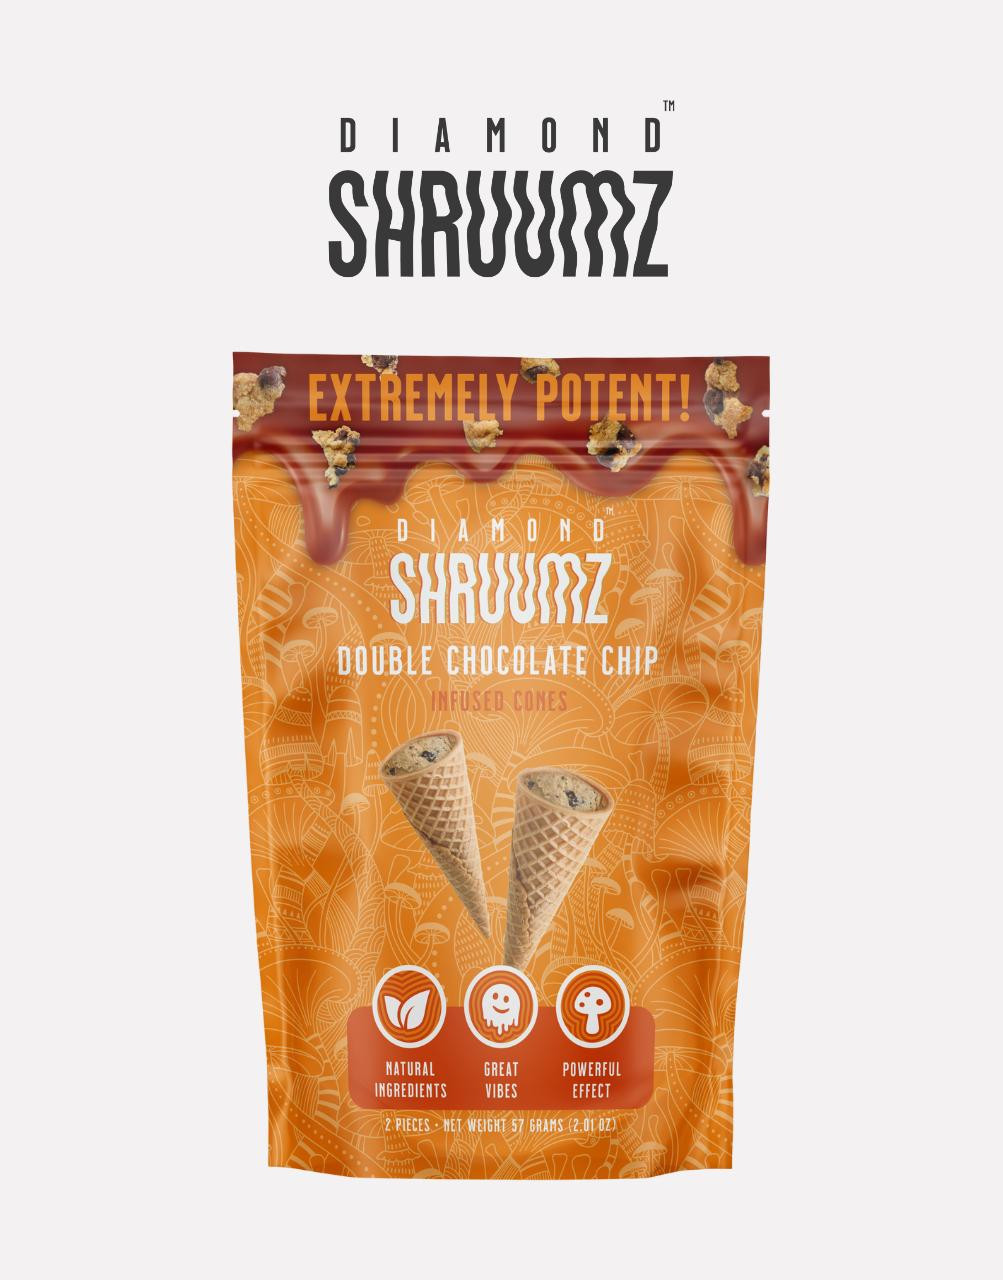 SHRUUMZ - Premium Microdose Chocolate Bar